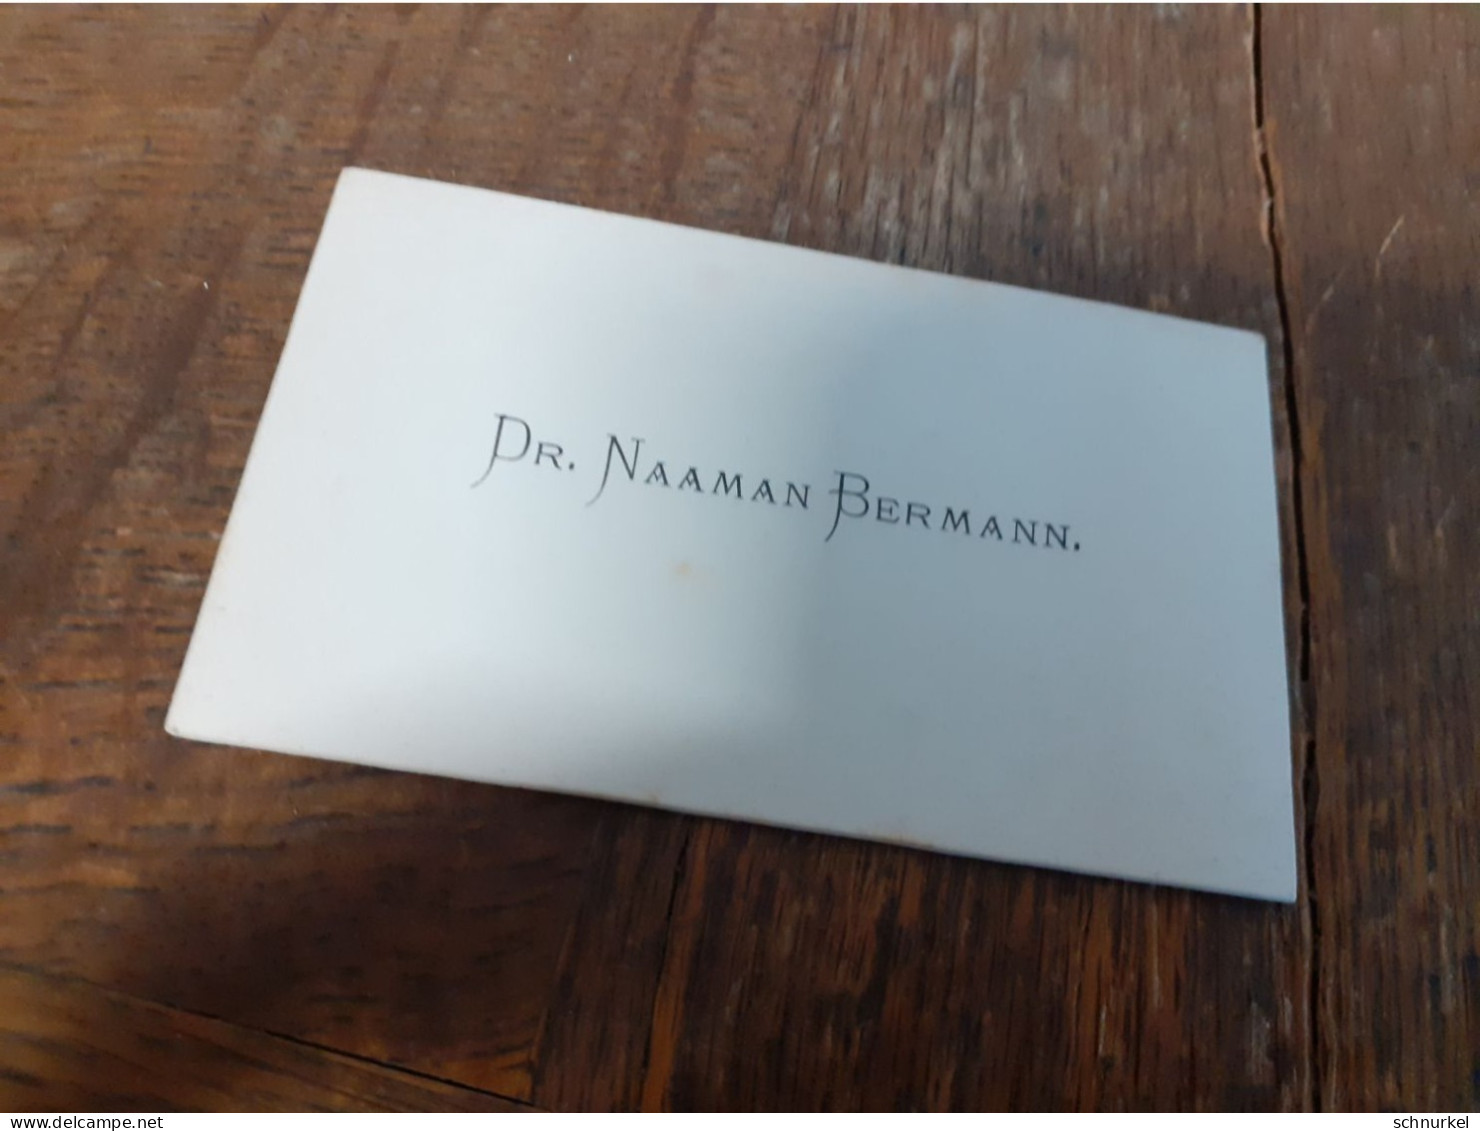 MANN In DEUTSCHLAND DAZUMAL - SCHICKER HERR Im PORTRAET - DR. NAAMAN BERMANN - VISITEN KARTE - Identified Persons